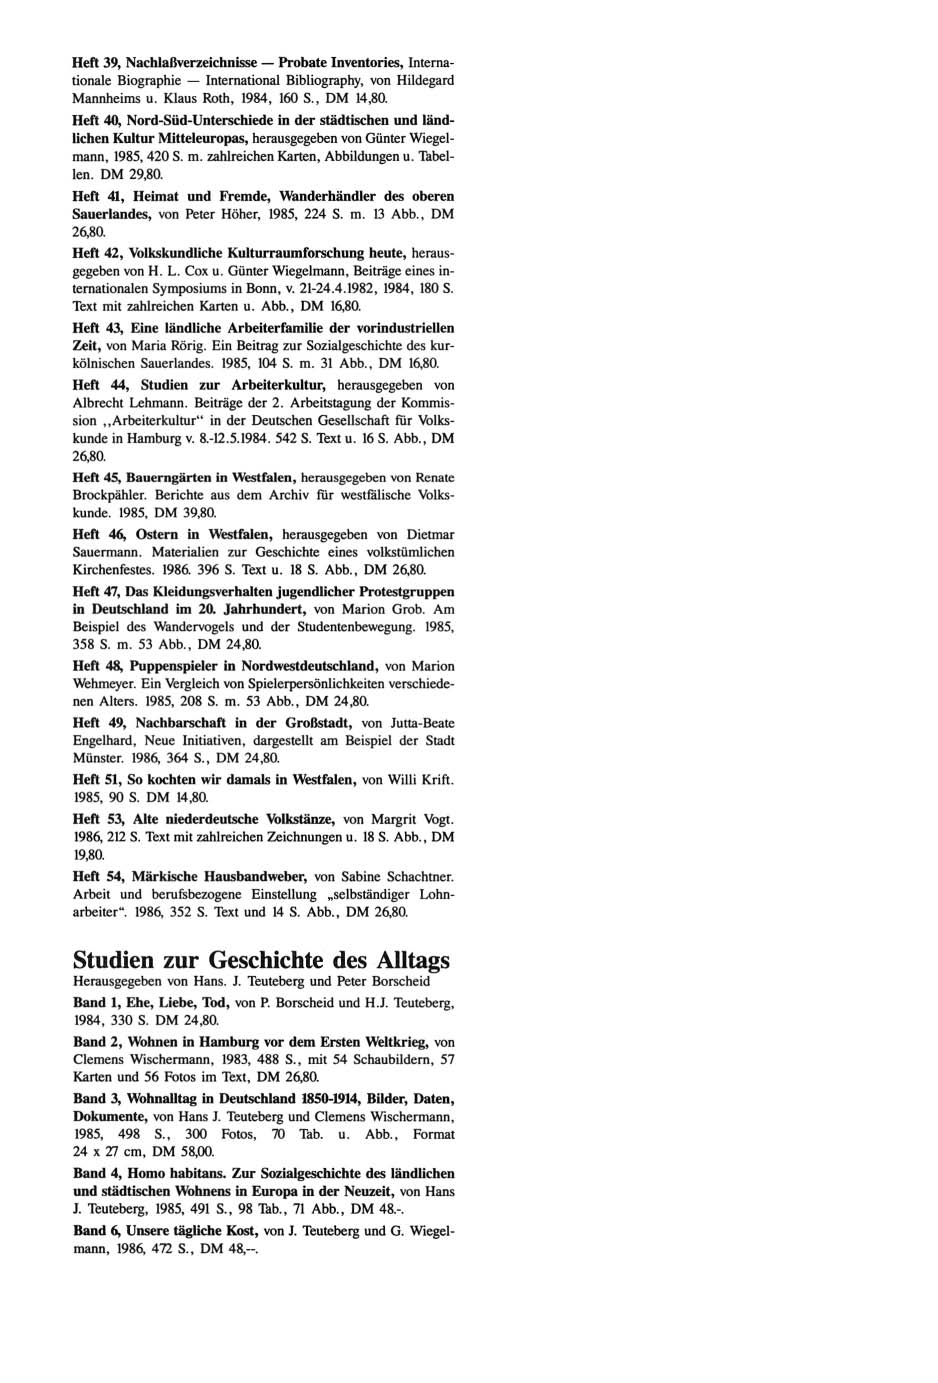 Heft 39, Nachlaßverzeichnisse - Probate Inventories, Internationale Biographie - International Bibliography, von Hildegard Mannheims u. Klaus Roth, 1984, 160 S., DM 14,80.